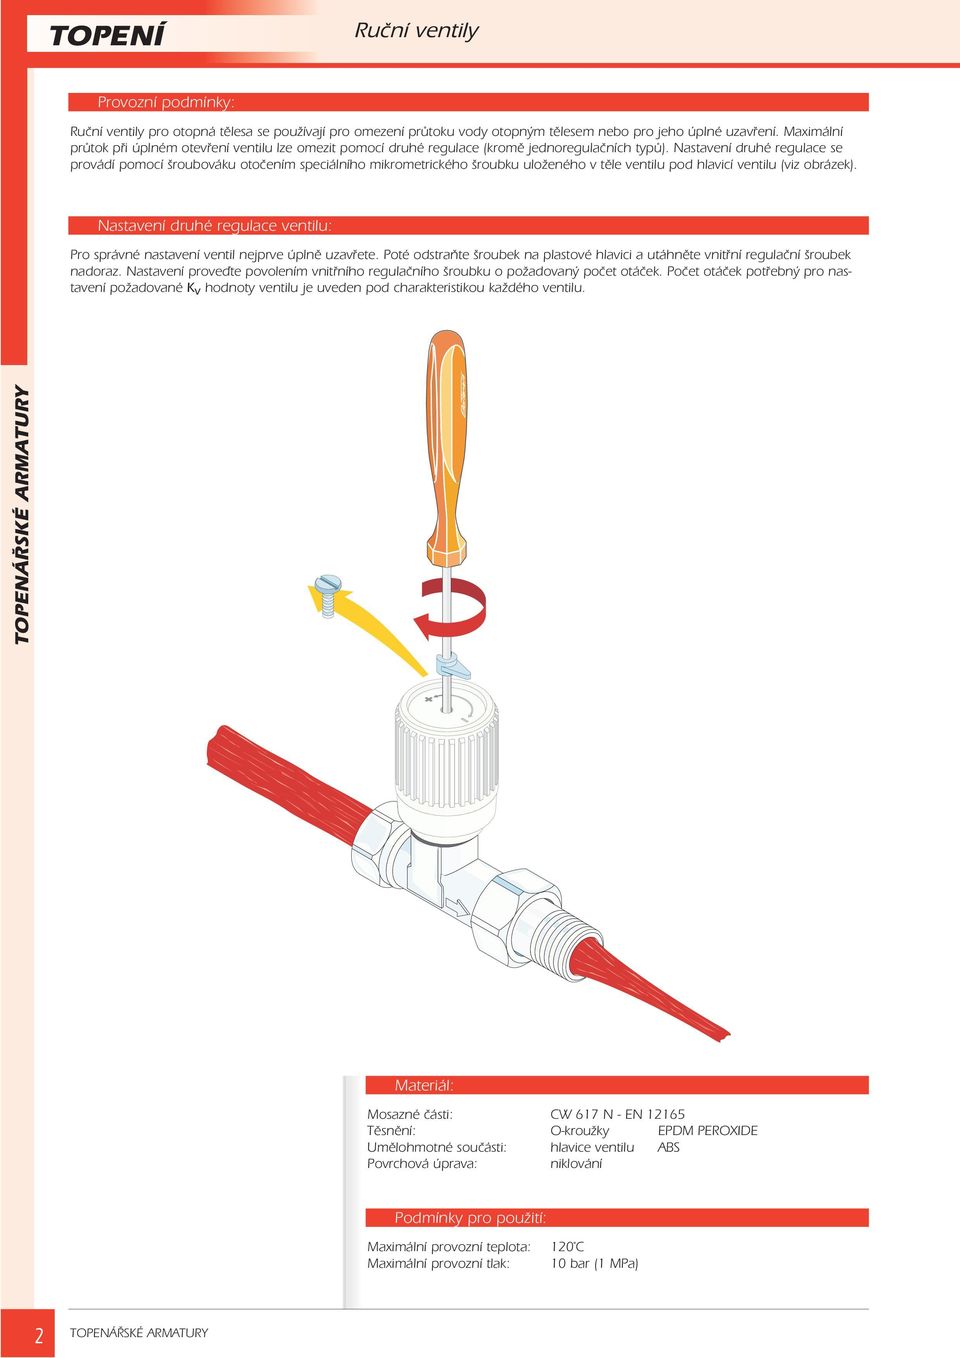 Nastavení druhé regulace se provádí pomocí šroubováku otoèením speciálního mikrometrického šroubku uloeného v tìle ventilu pod hlavicí ventilu (viz obrázek).